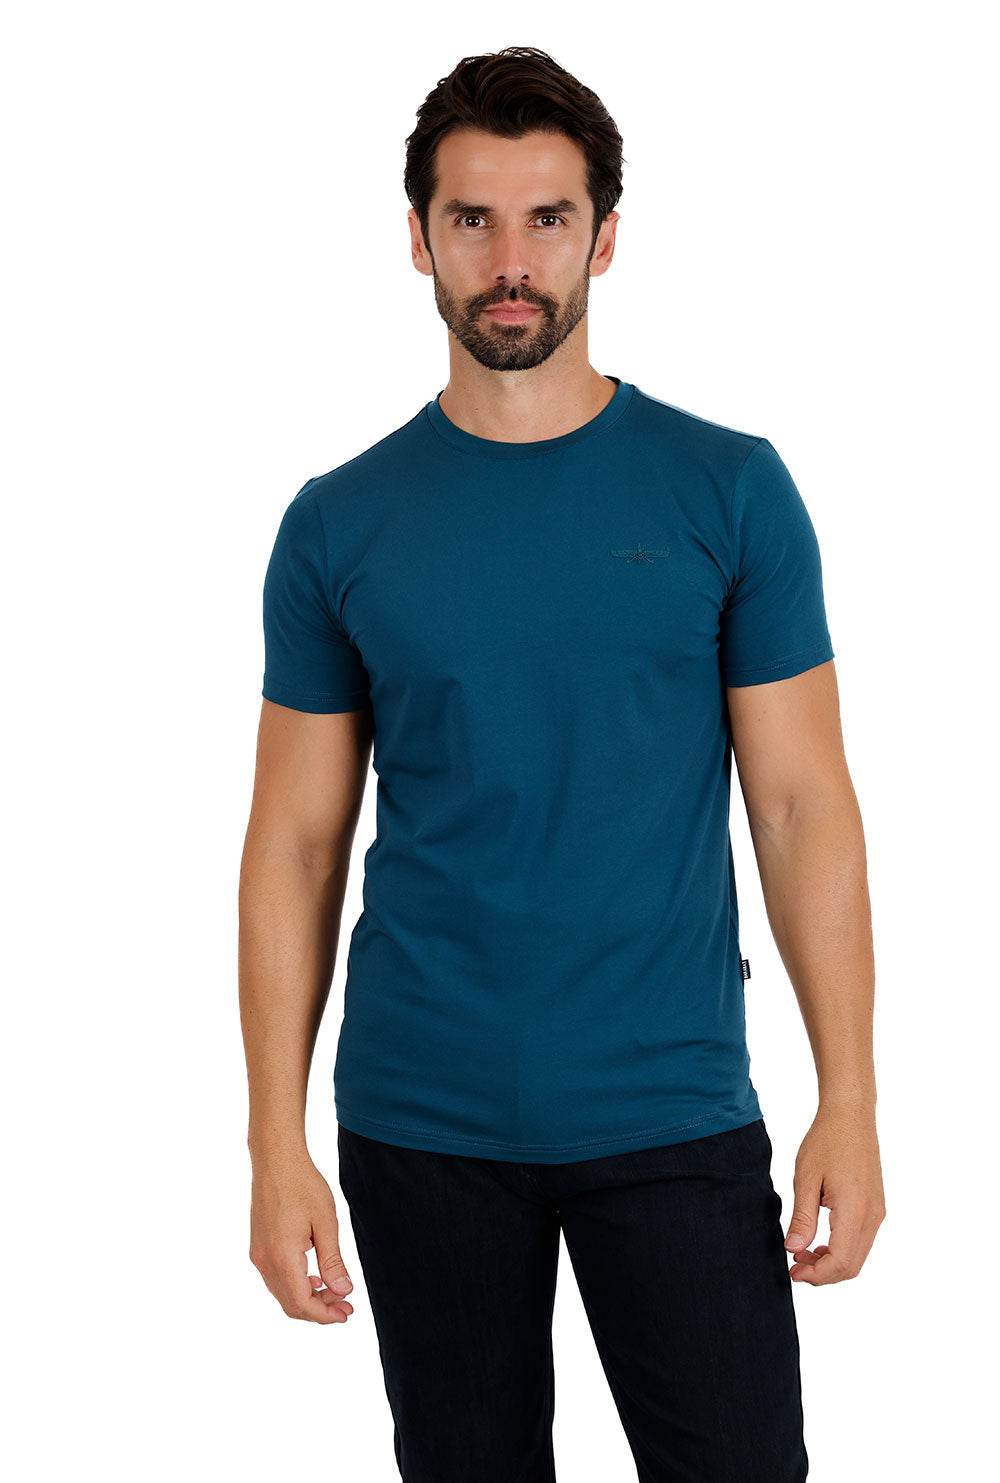 BARABAS Men's Basic Solid Color Crew-neck T-shirts ST933 Teal